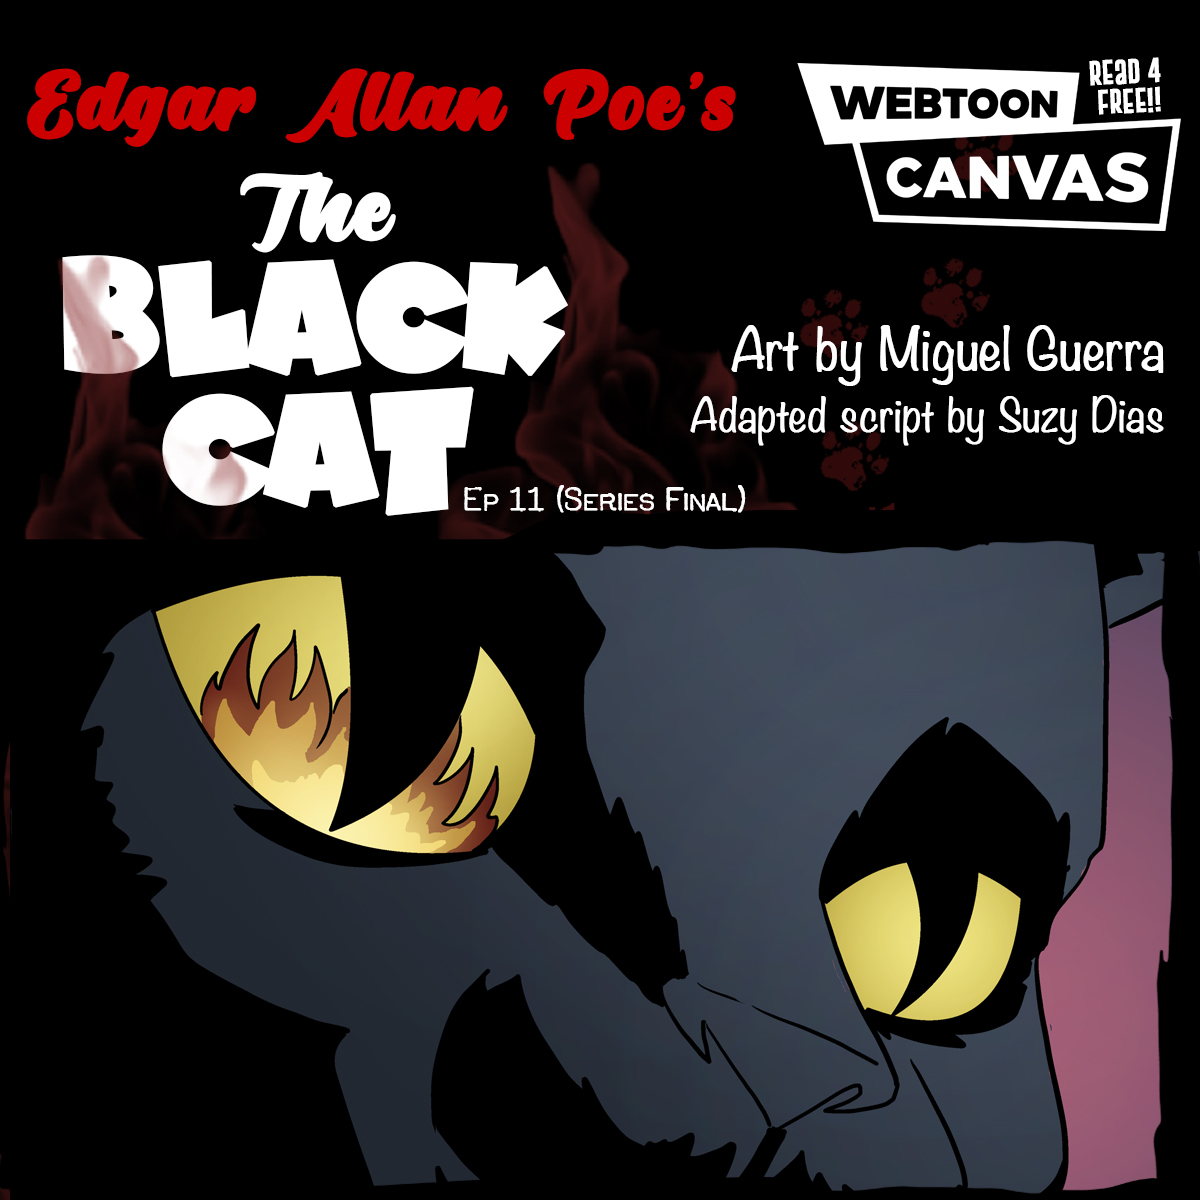 Ghost Metal on Webtoon: The Black Cat ep10 | Final